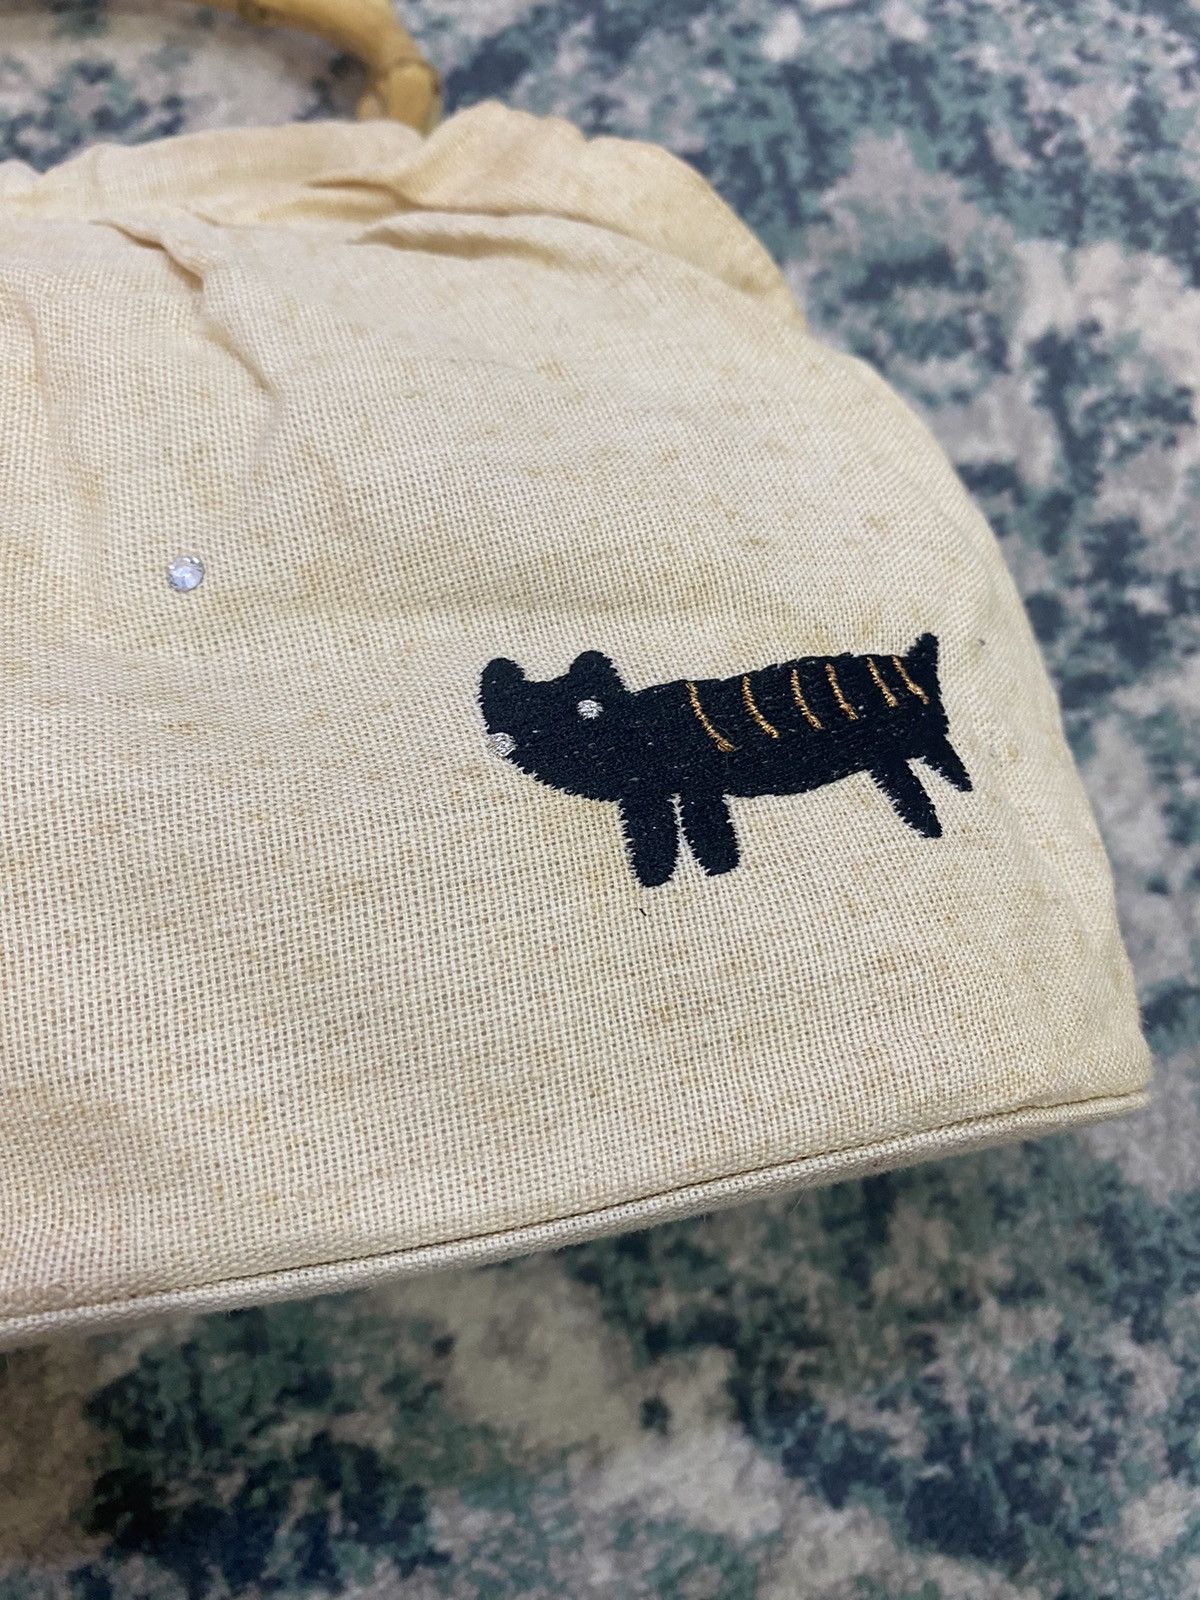 Tsumori Chisato Issey Miyake Cats Rattan Handle Hand Bag - 4